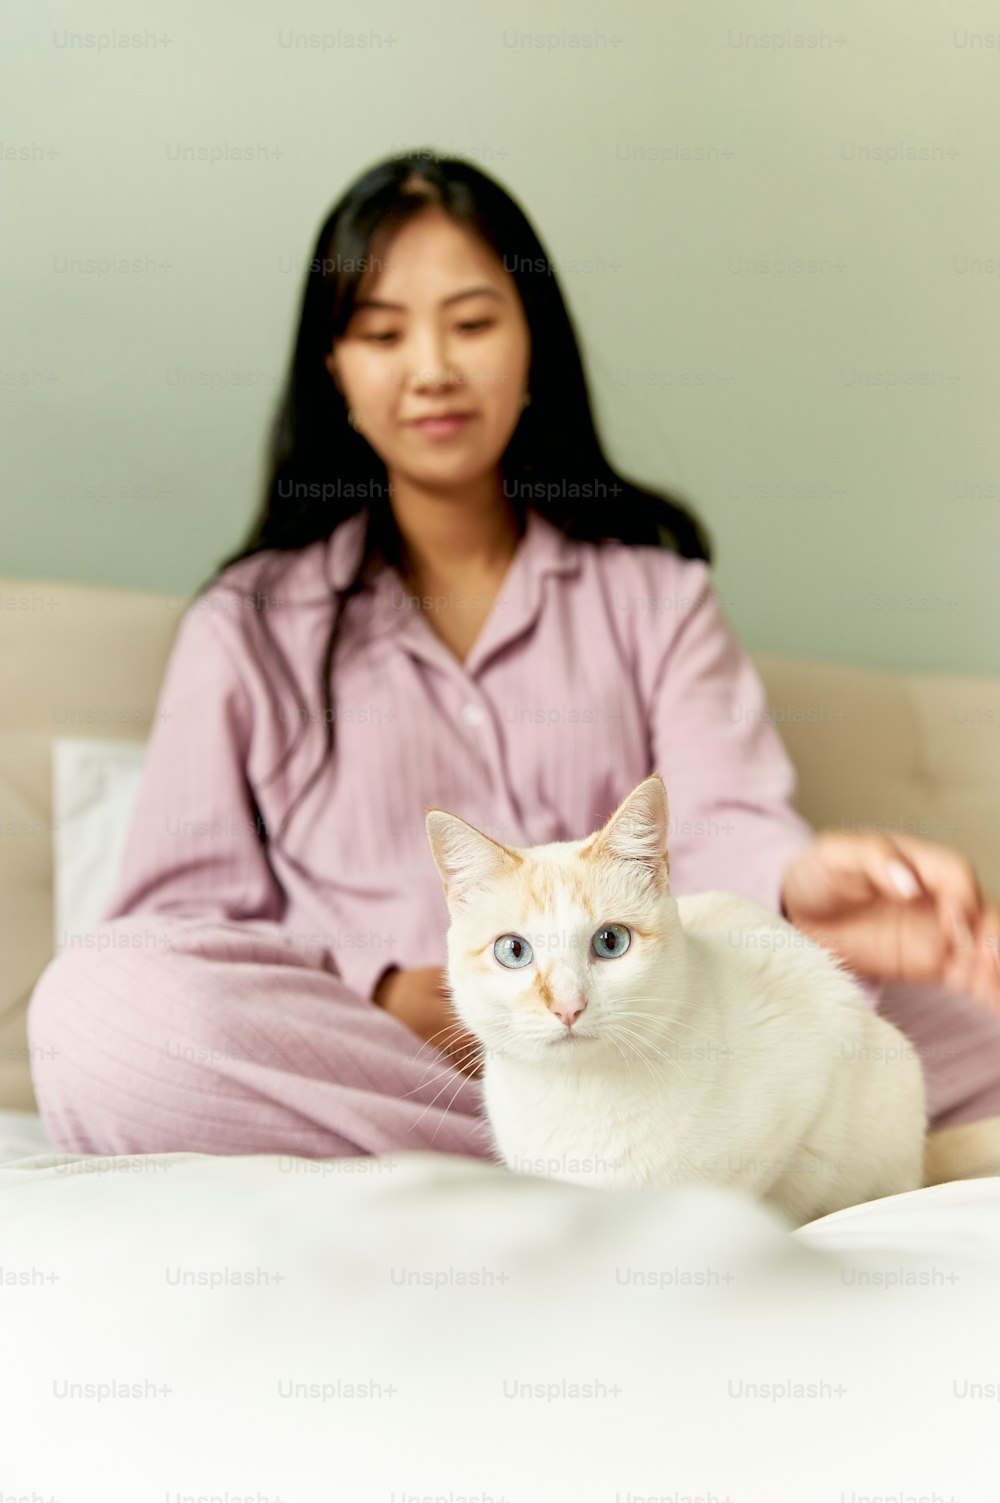 uma mulher sentada em uma cama com um gato branco